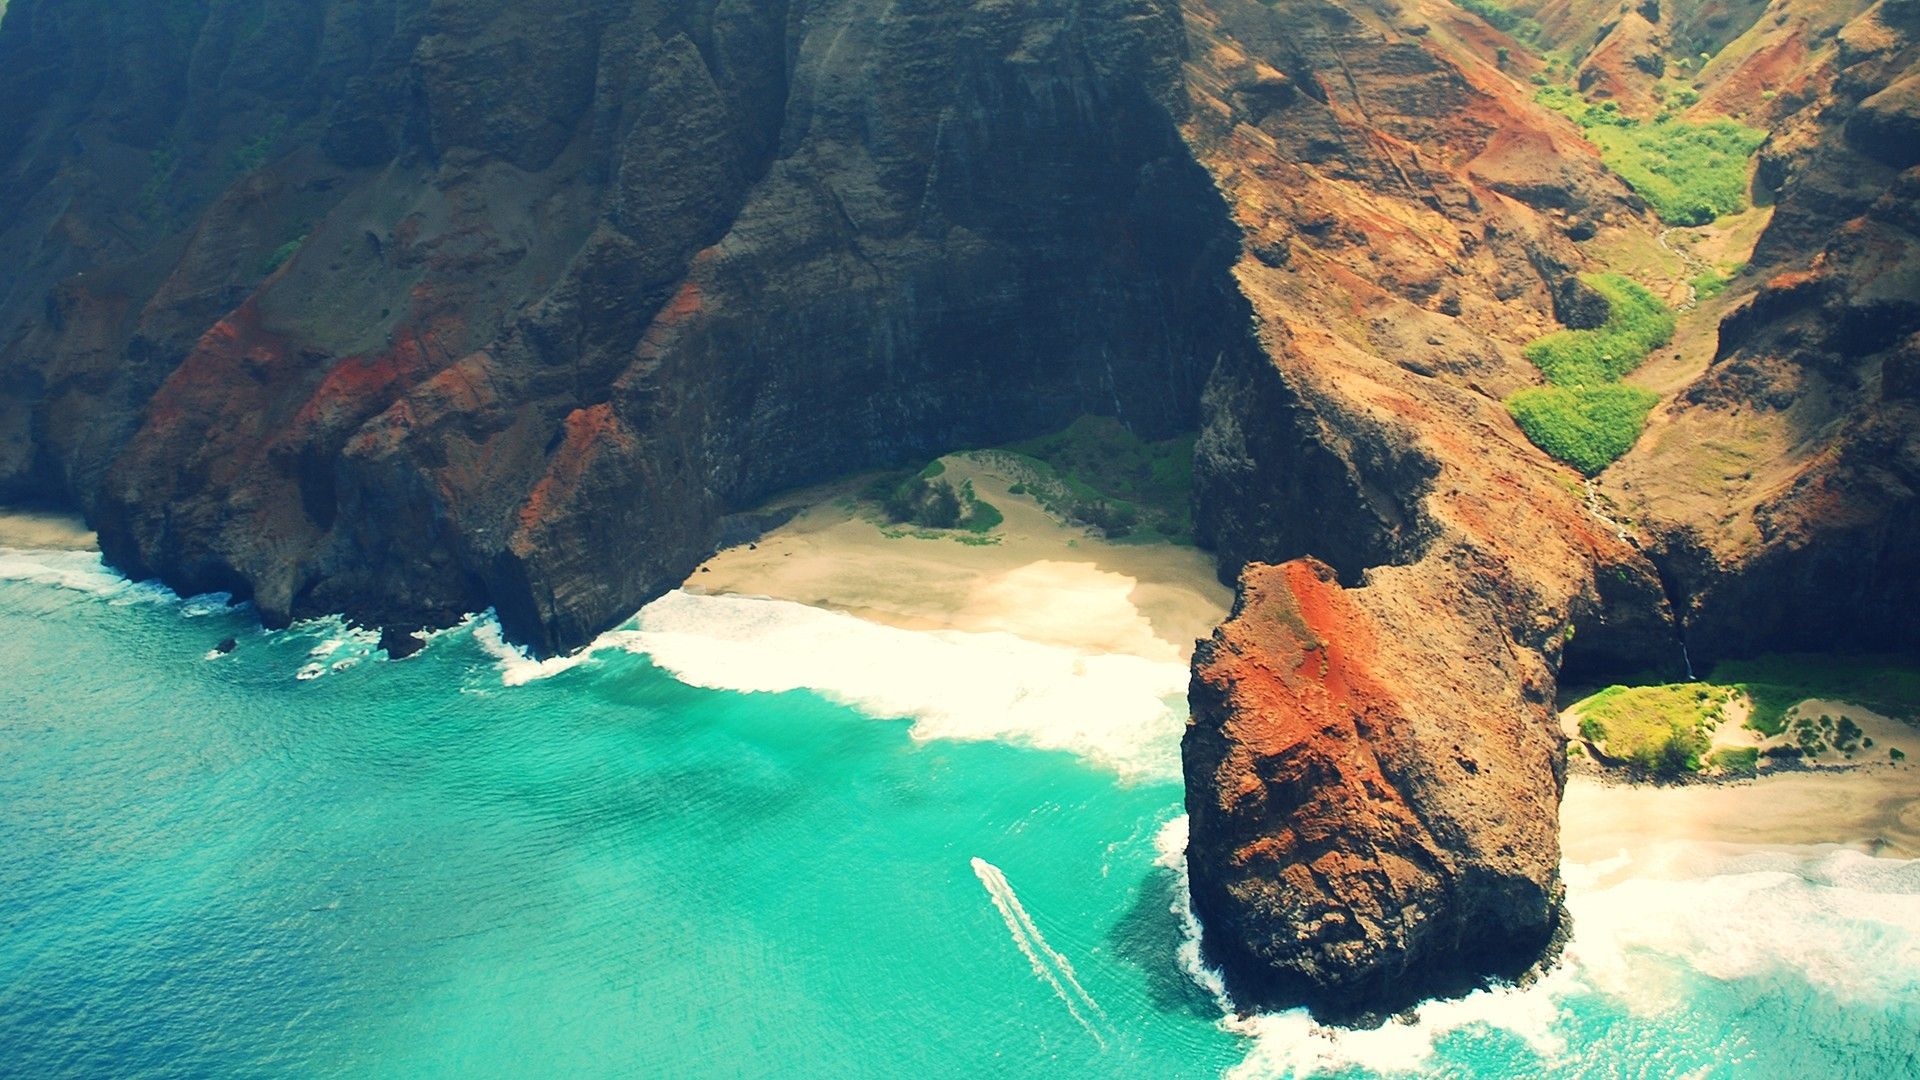 #Hawaii, #beach, #sea, #summer, #landscape, #nature wallpaper HD Wallpaper